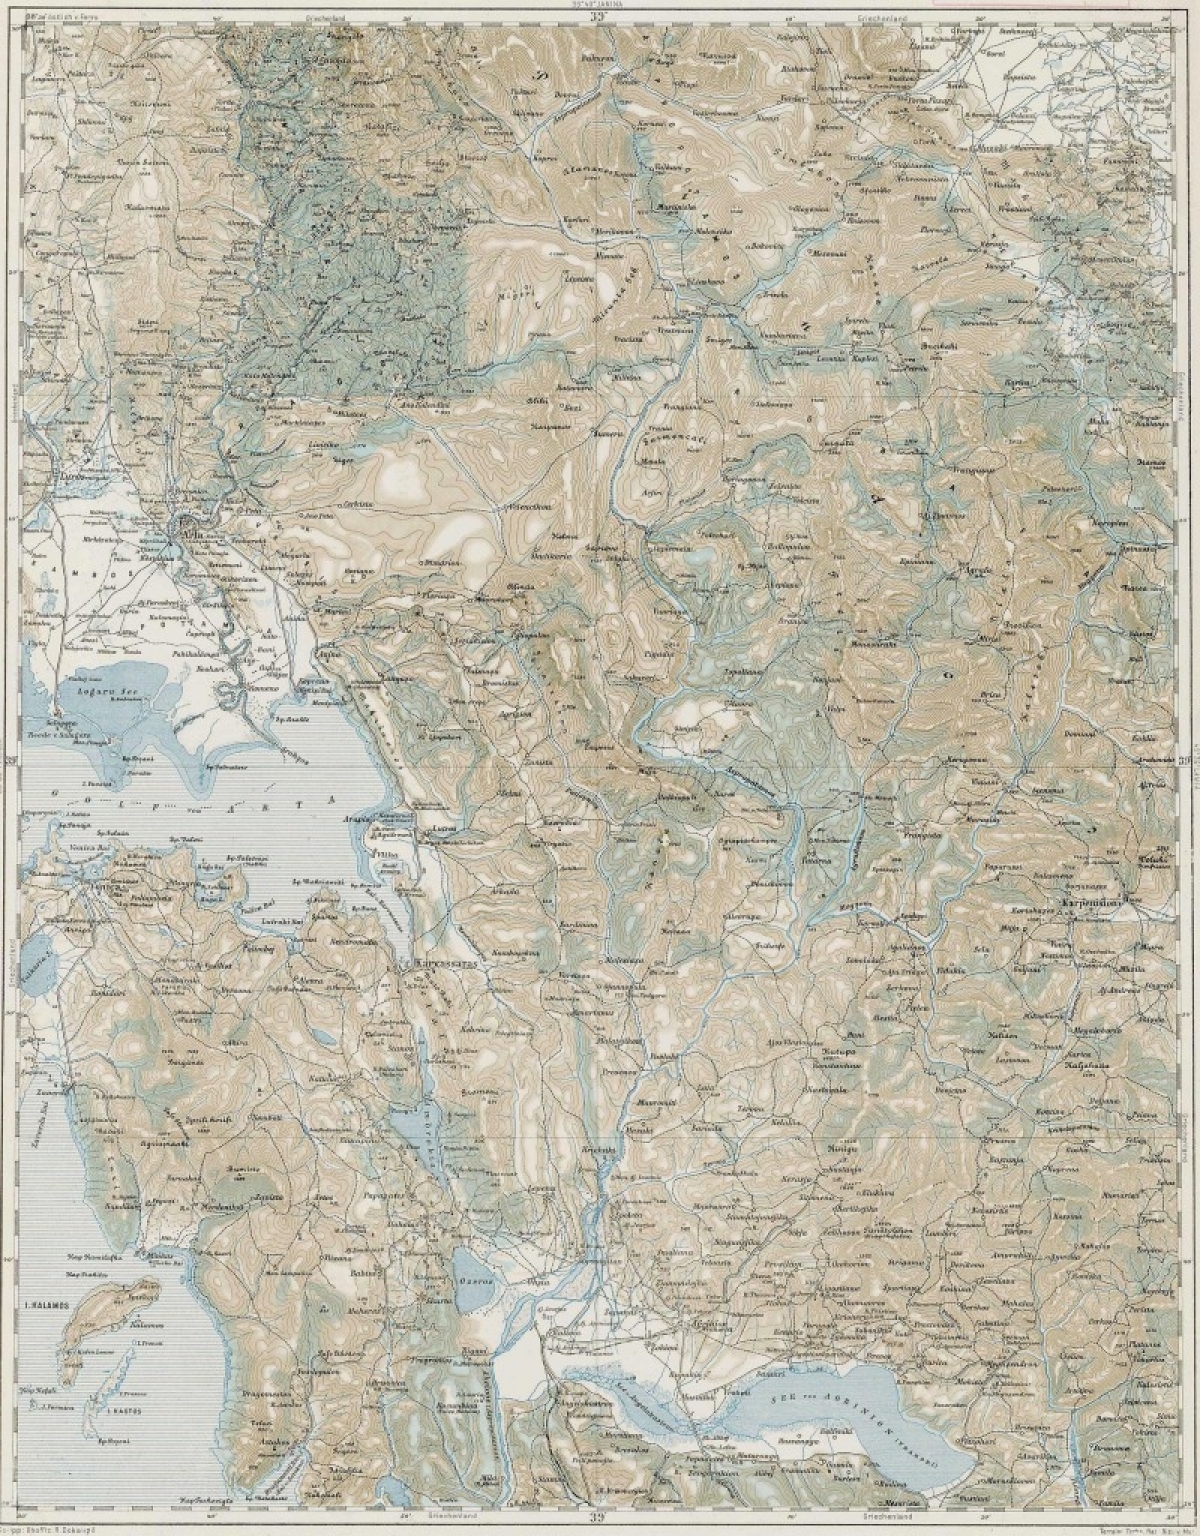 Ιστορικός χάρτης του 1914 για την περιοχή μας